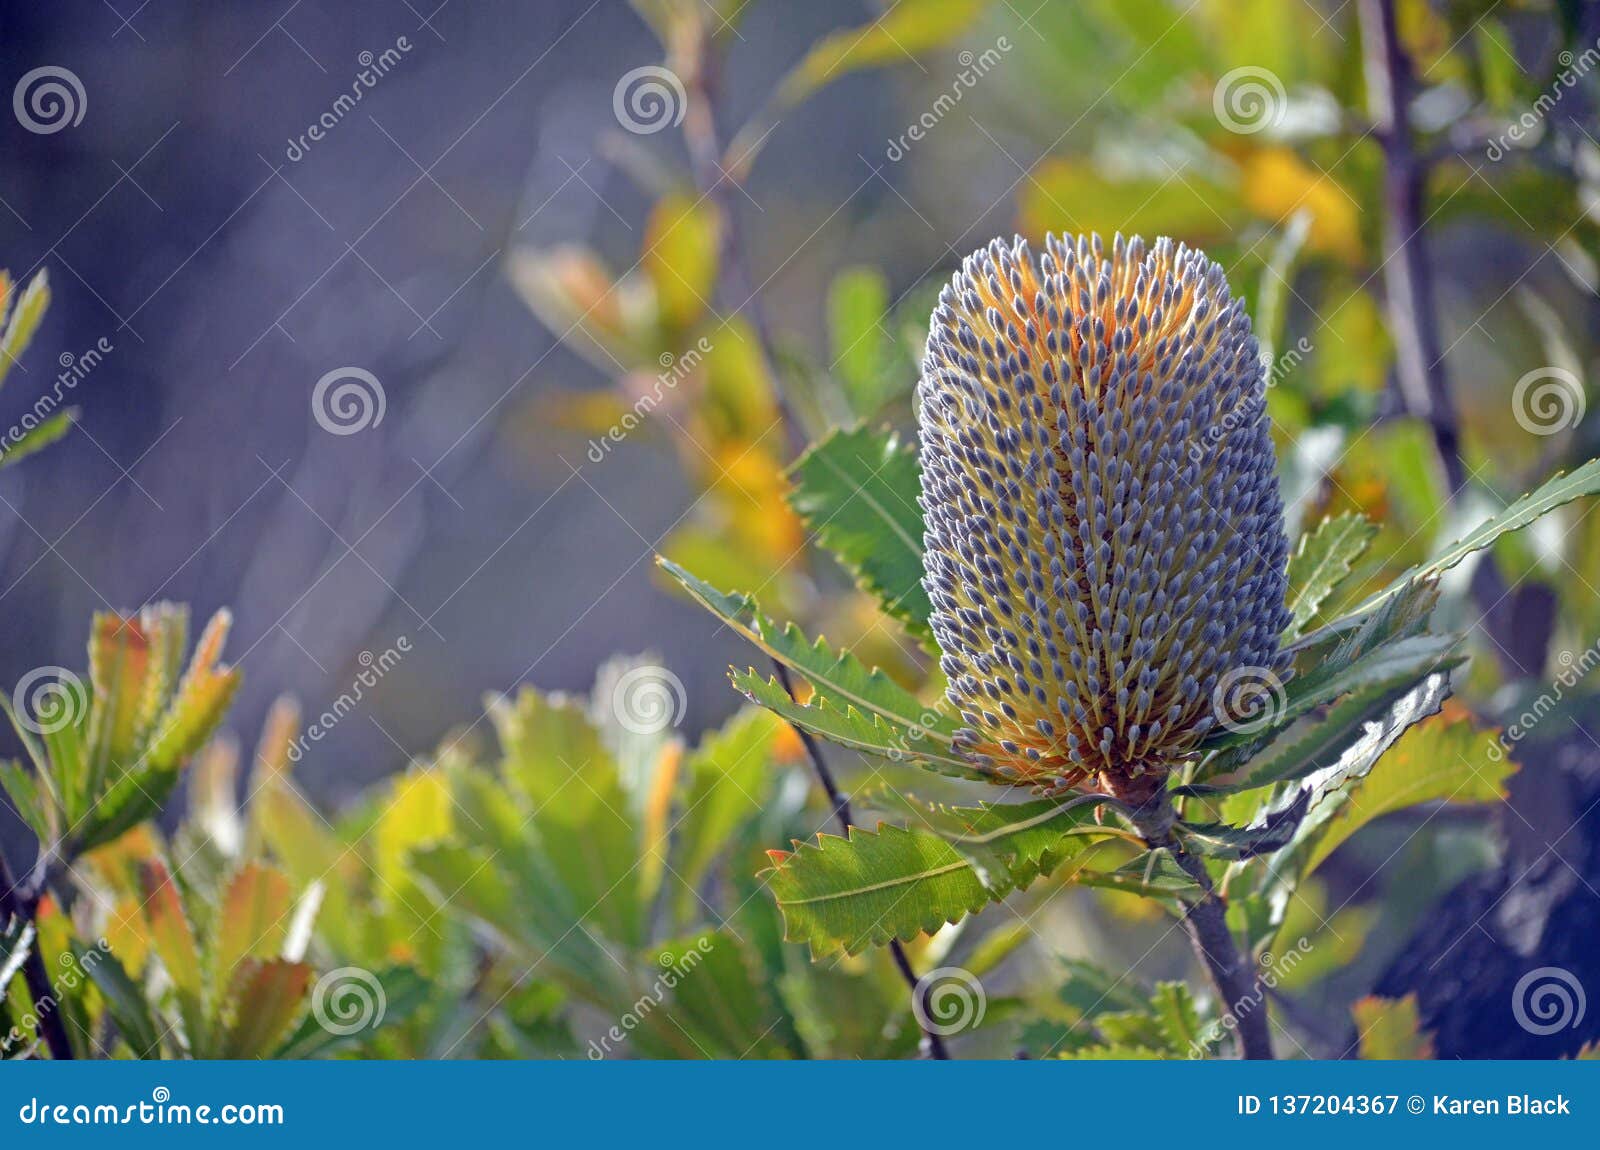 inflorescence of australian native banksia serrata